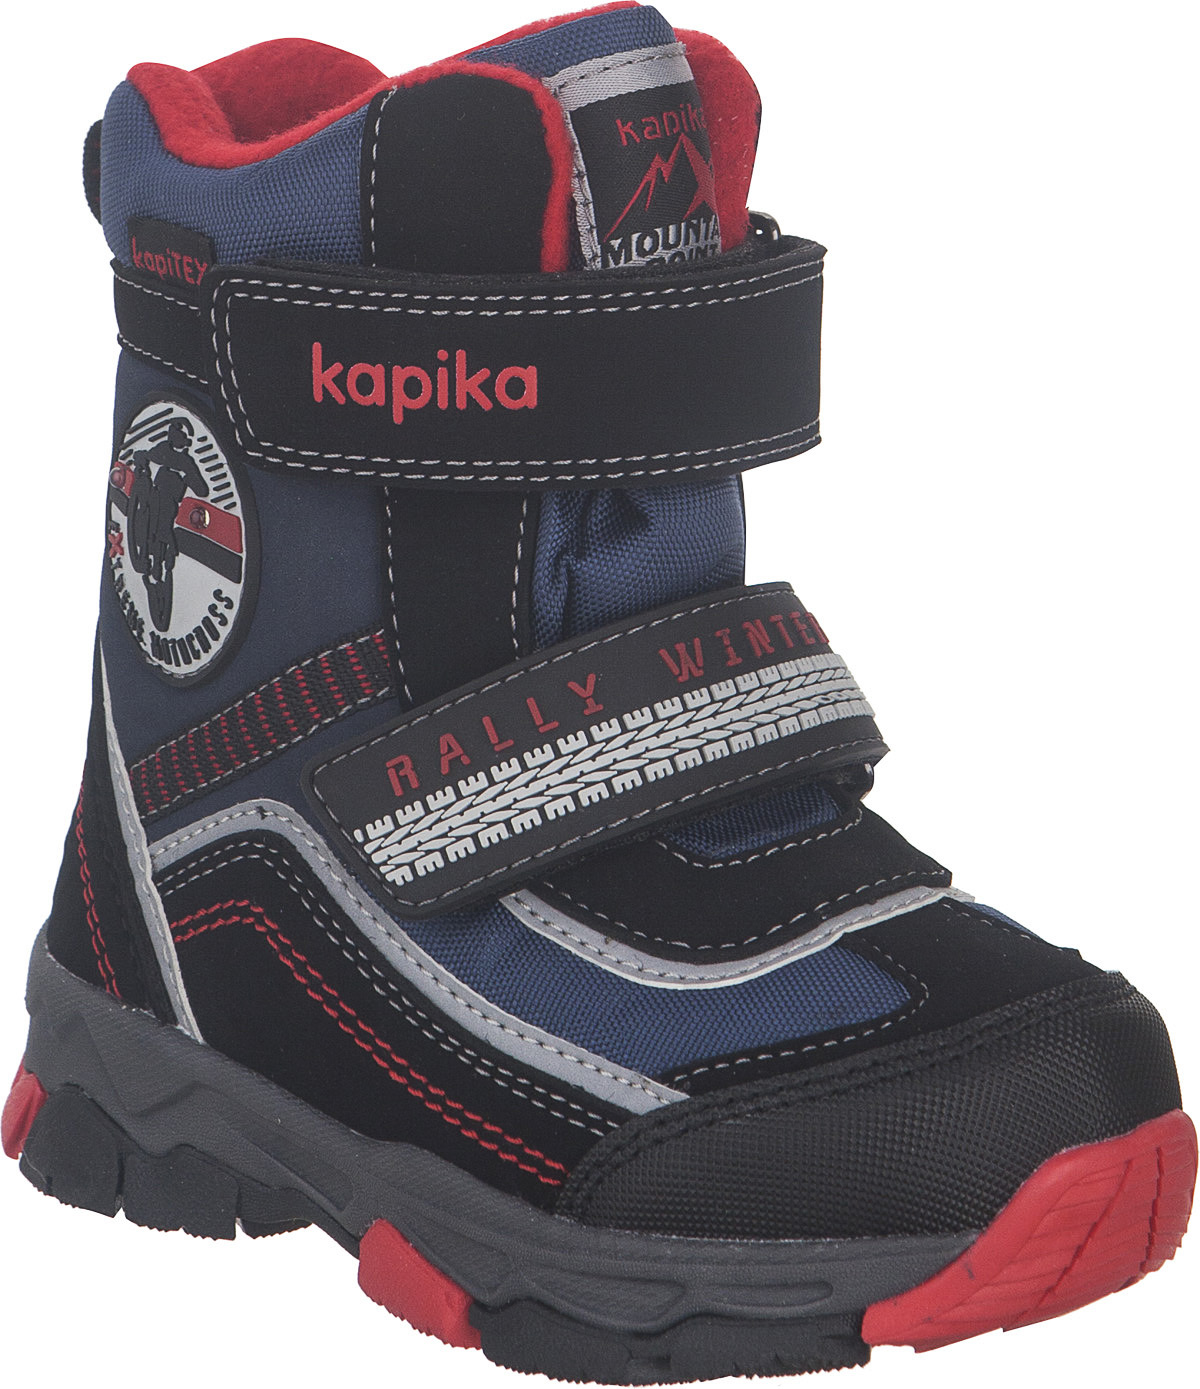 Ботинки для мальчика Kapika KapiTEX, цвет: черный, синий, красный. 41230-2. Размер 25